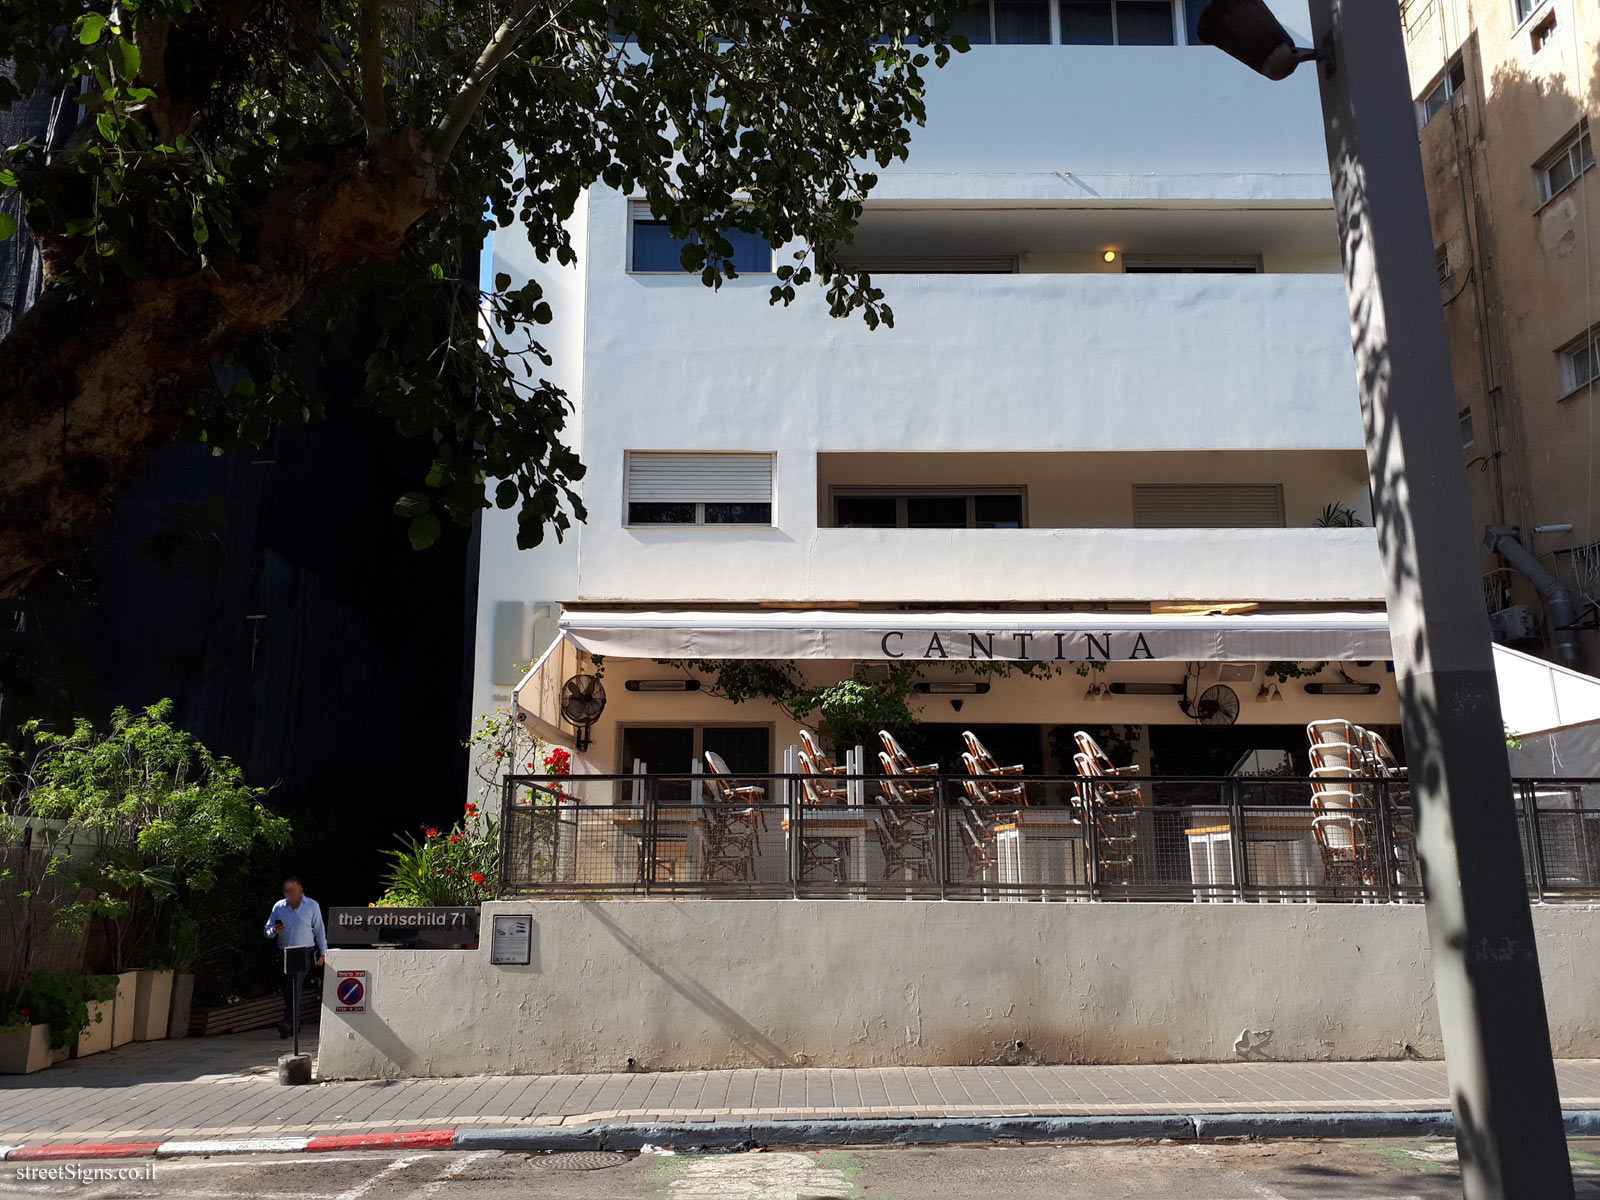 Tel Aviv - buildings for conservation - Rothschild 71